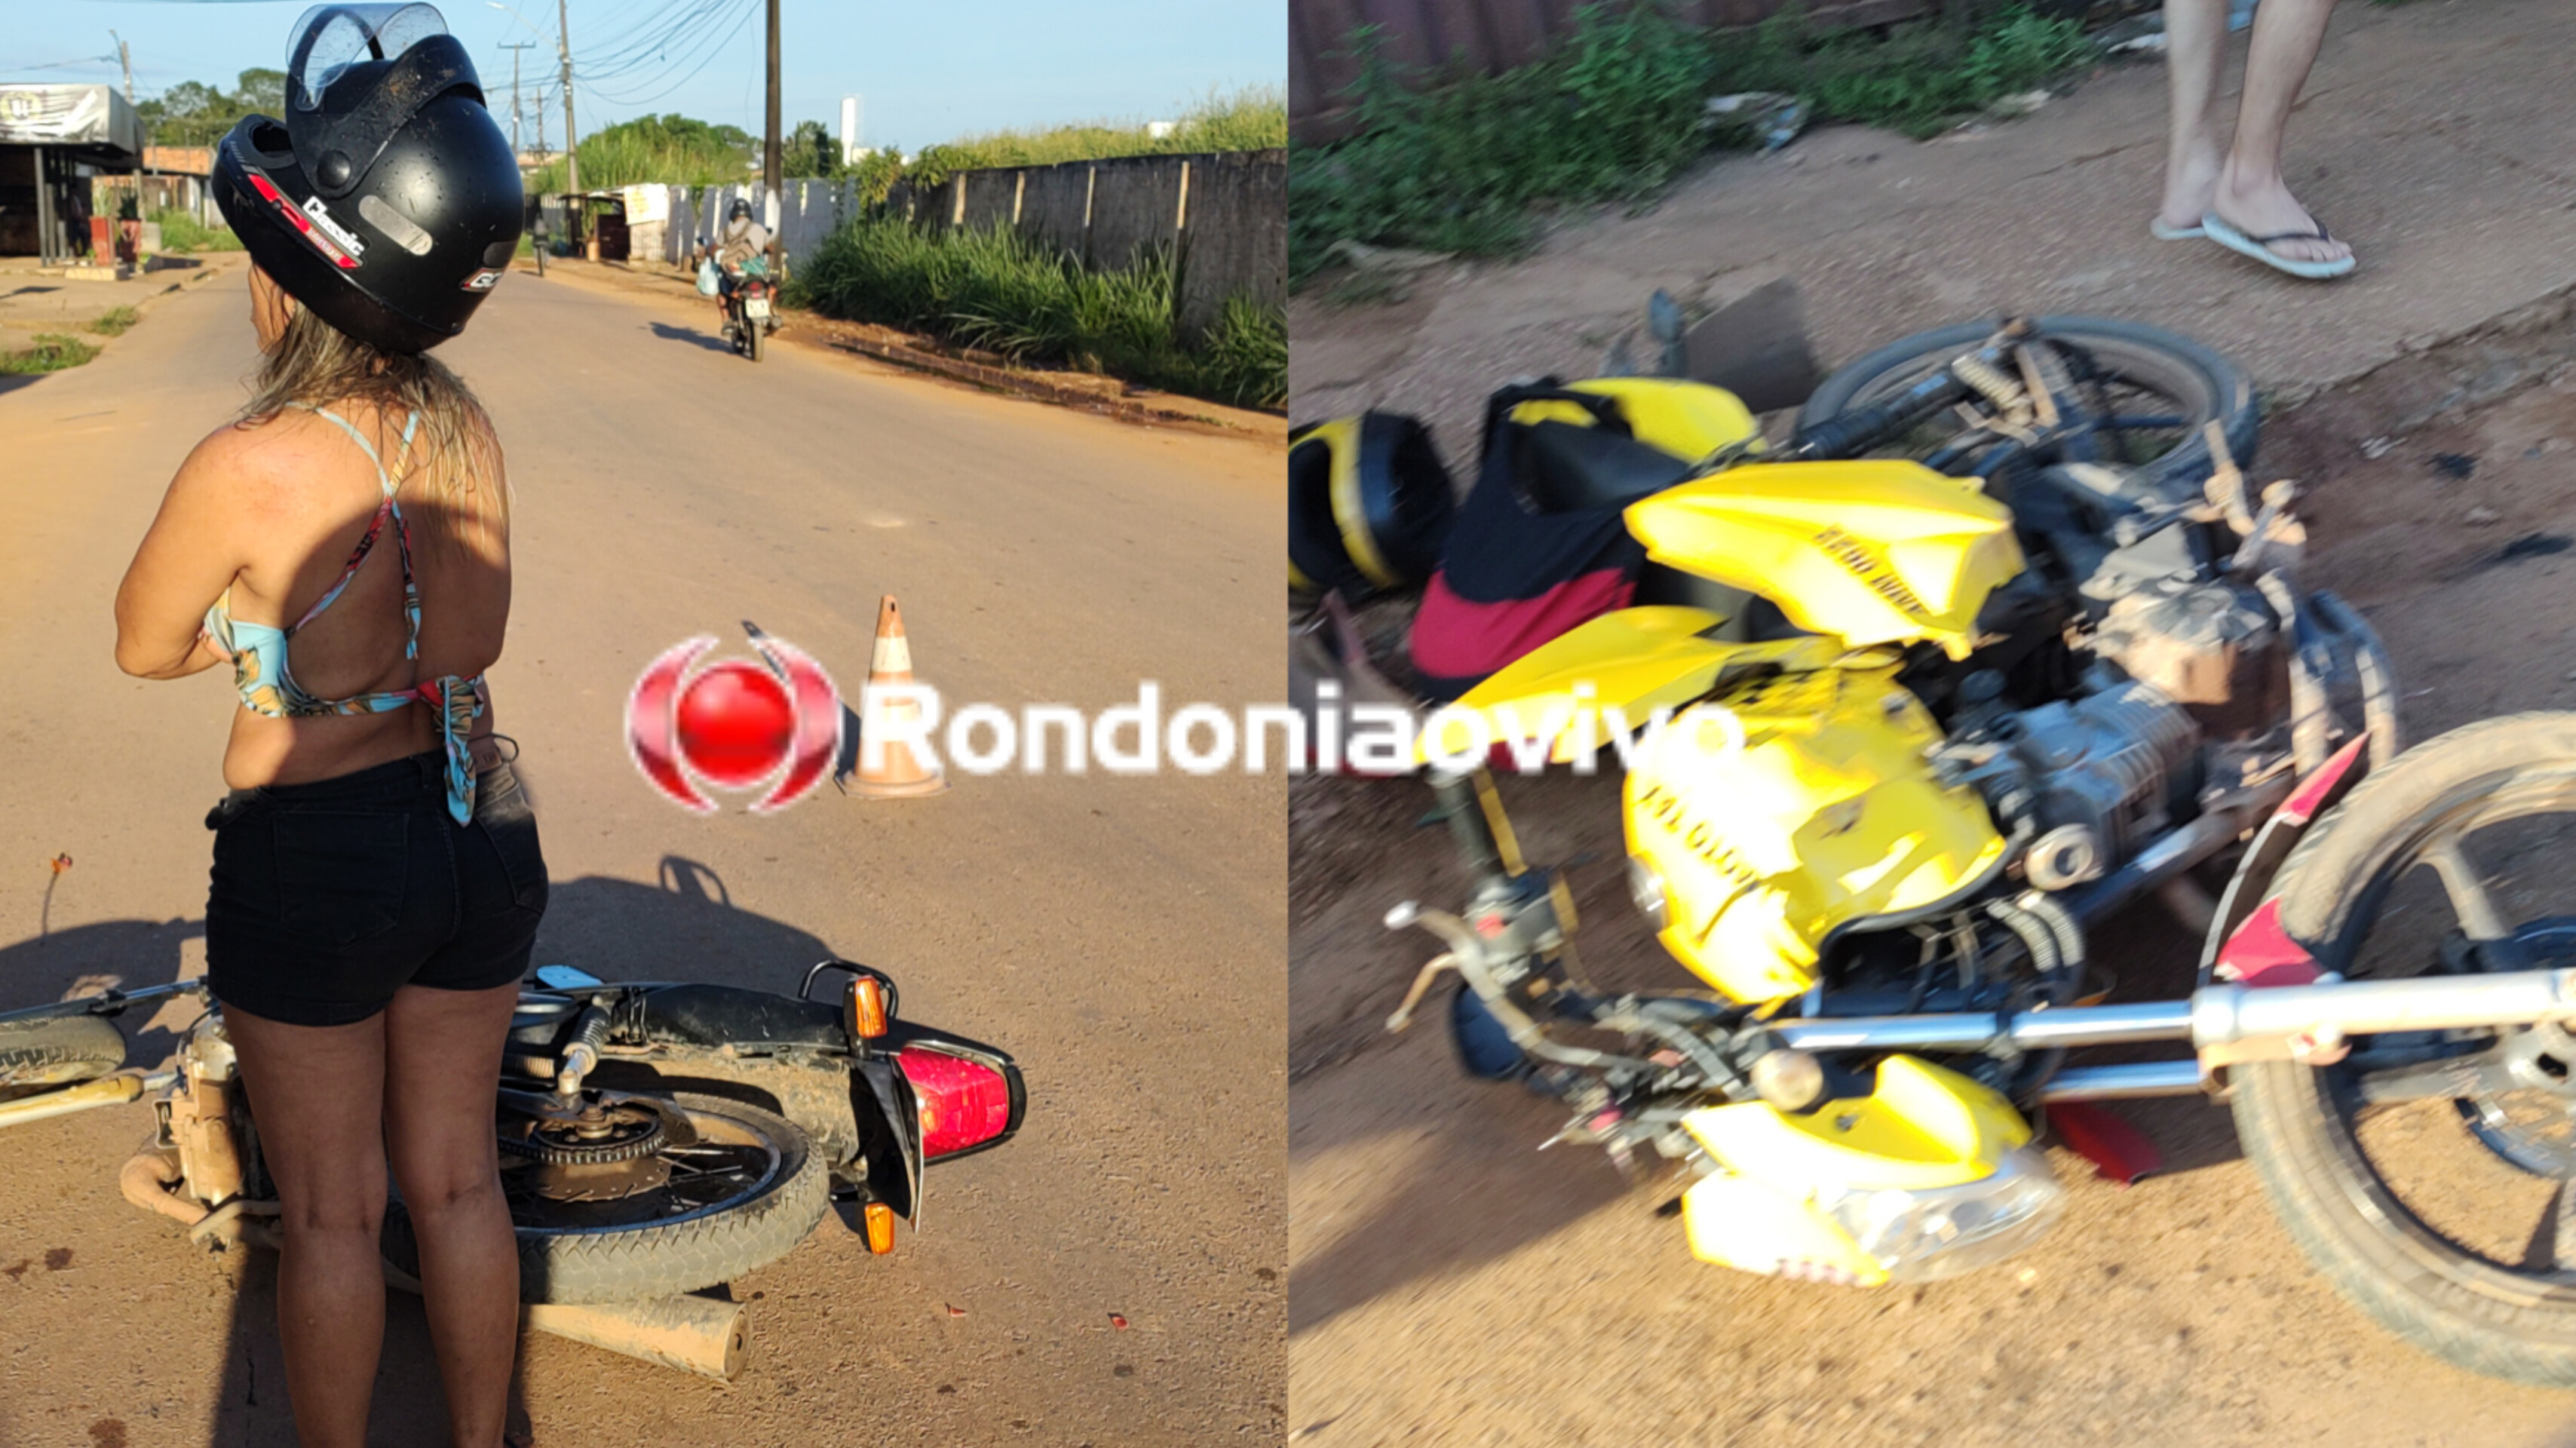 VÍDEO: Mulher embriagada causa grave acidente com mototaxista 